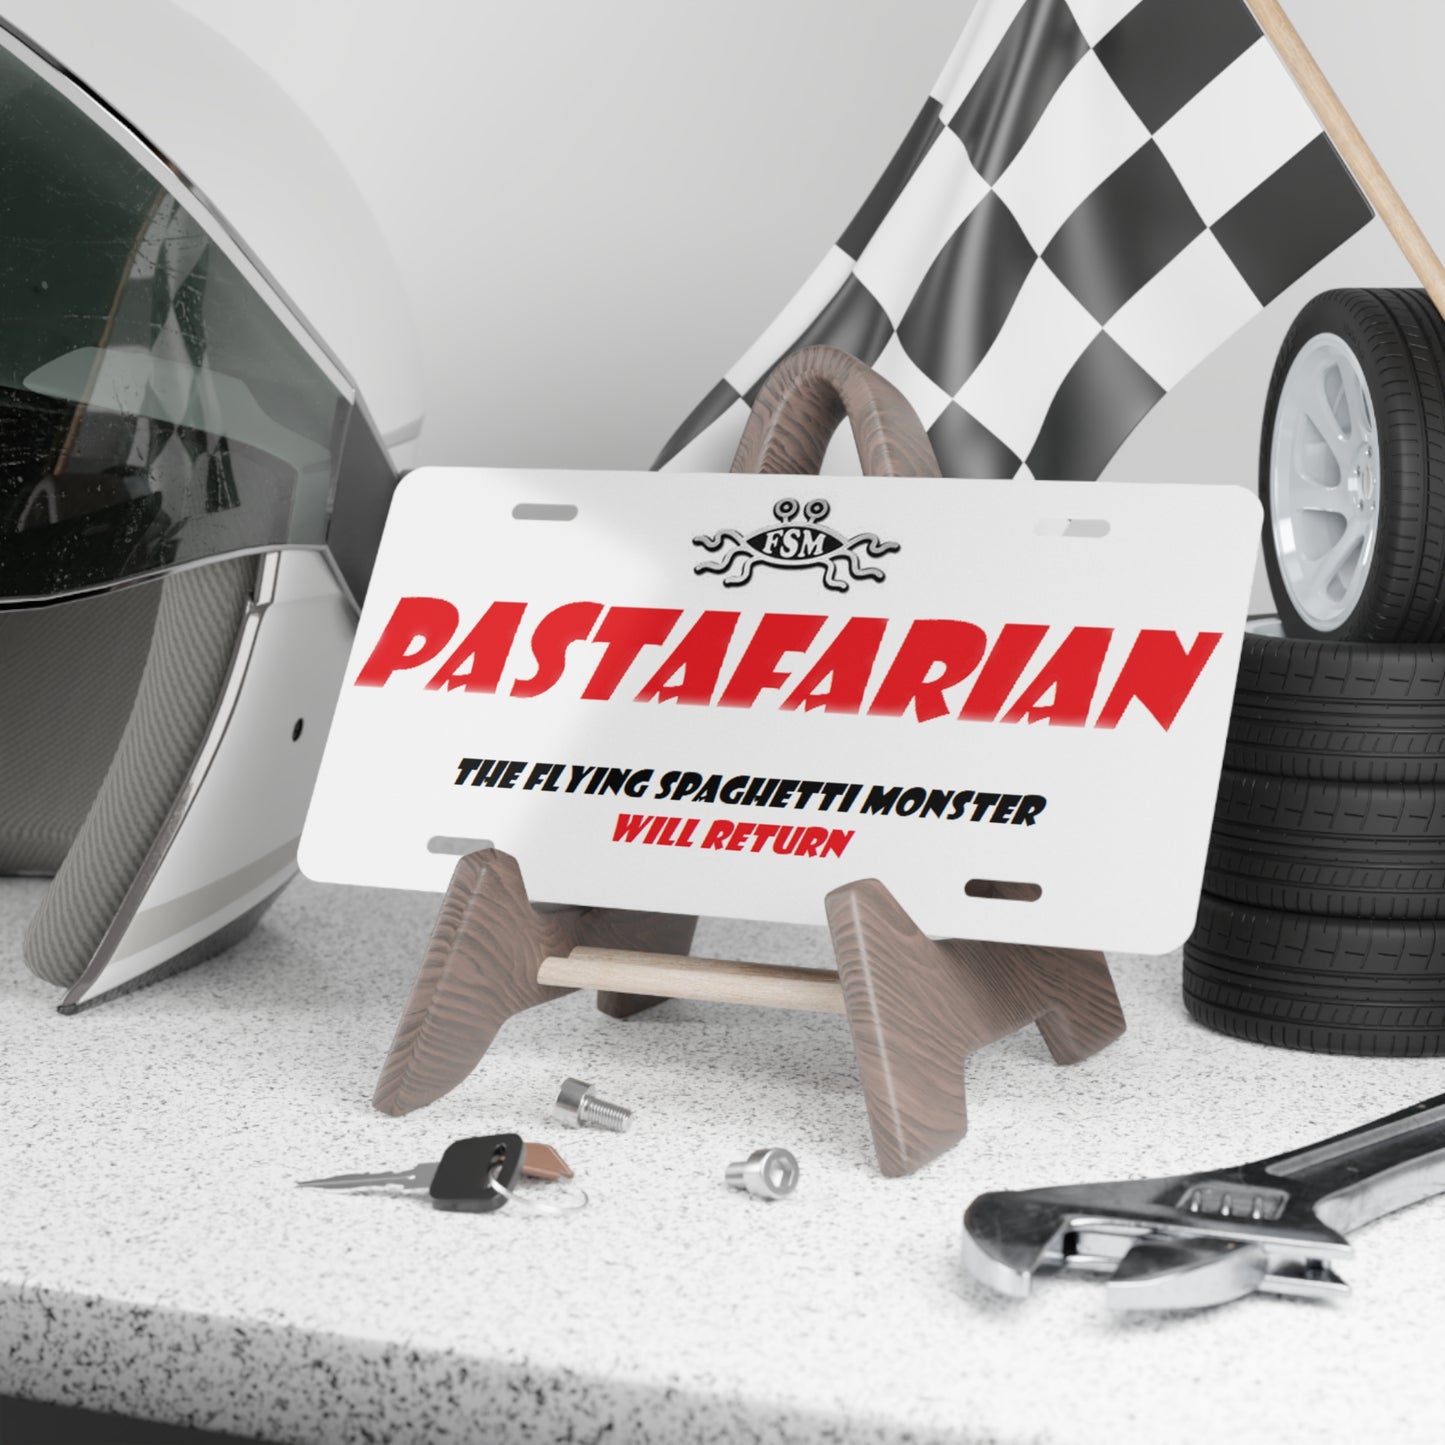 Flying Spaghetti Monster Pastafarian Vanity License Plate